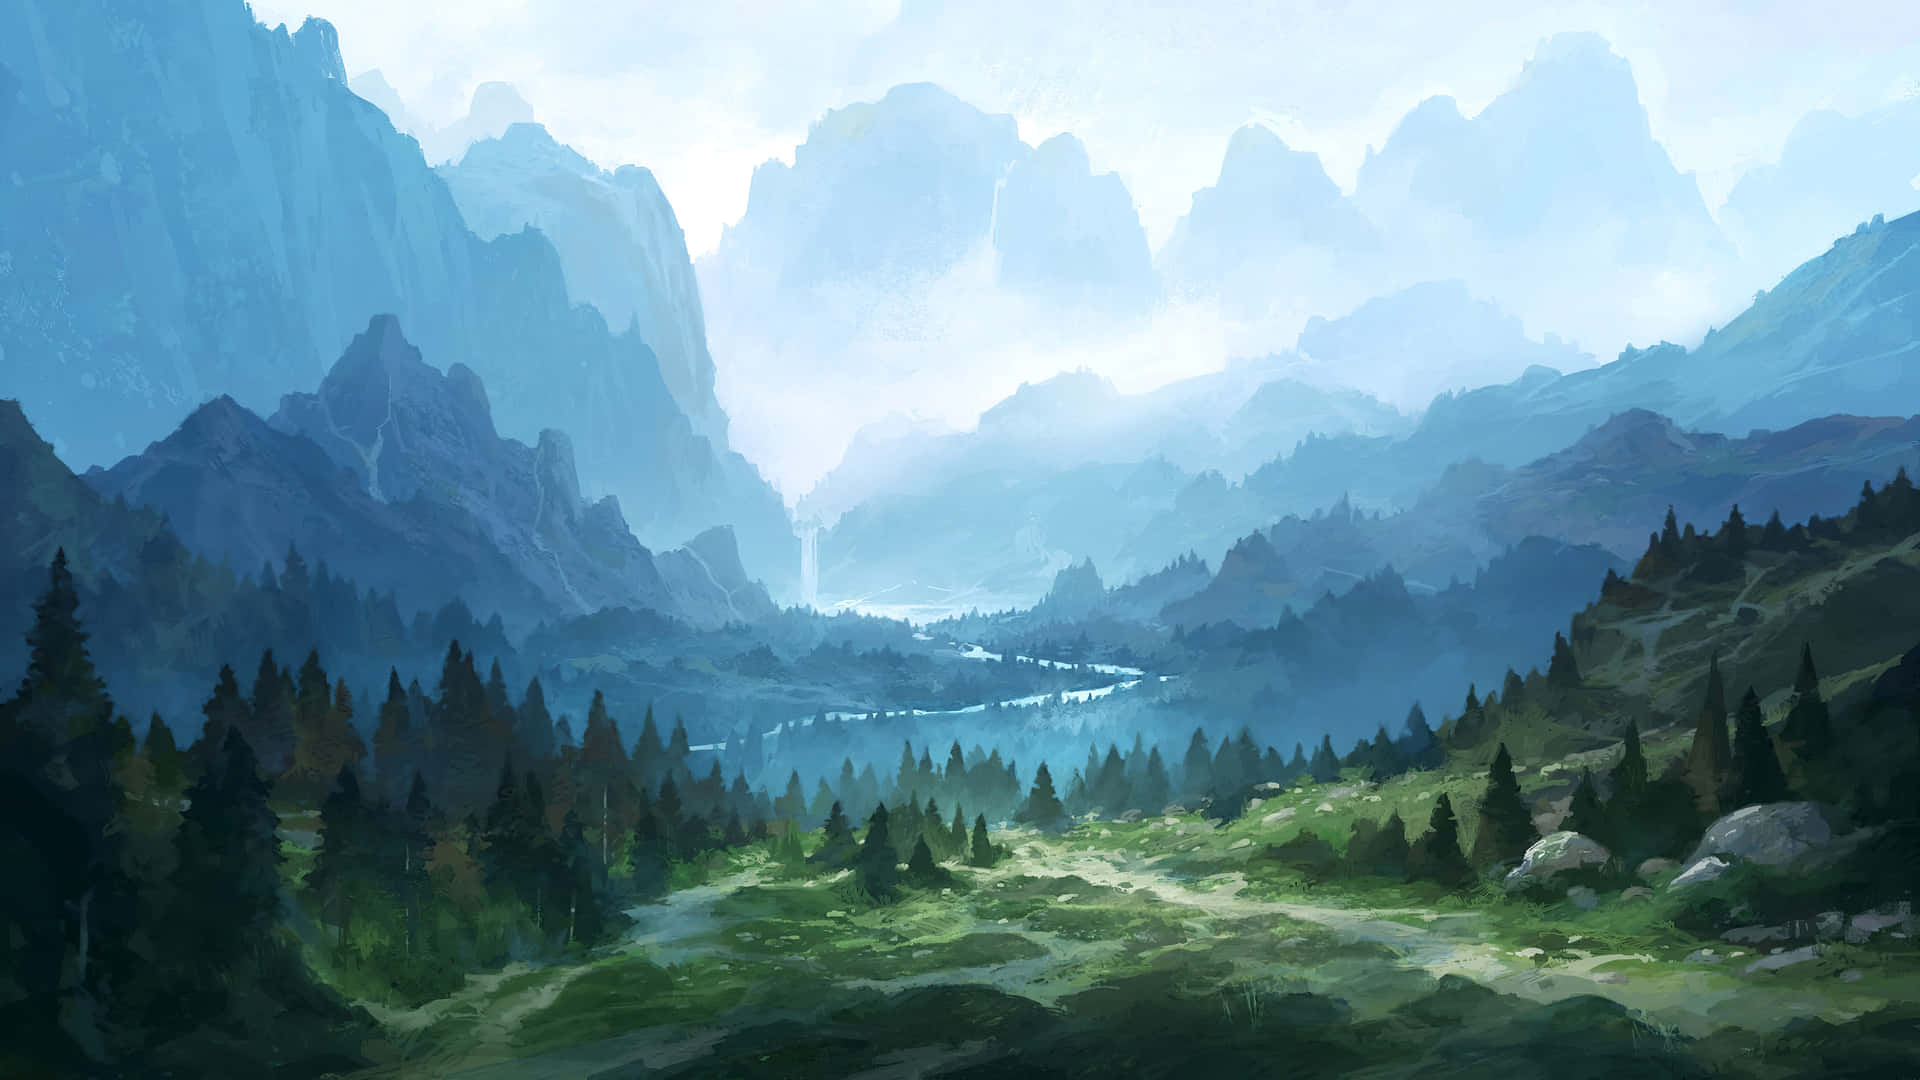 Misty mountain landscape wall mural